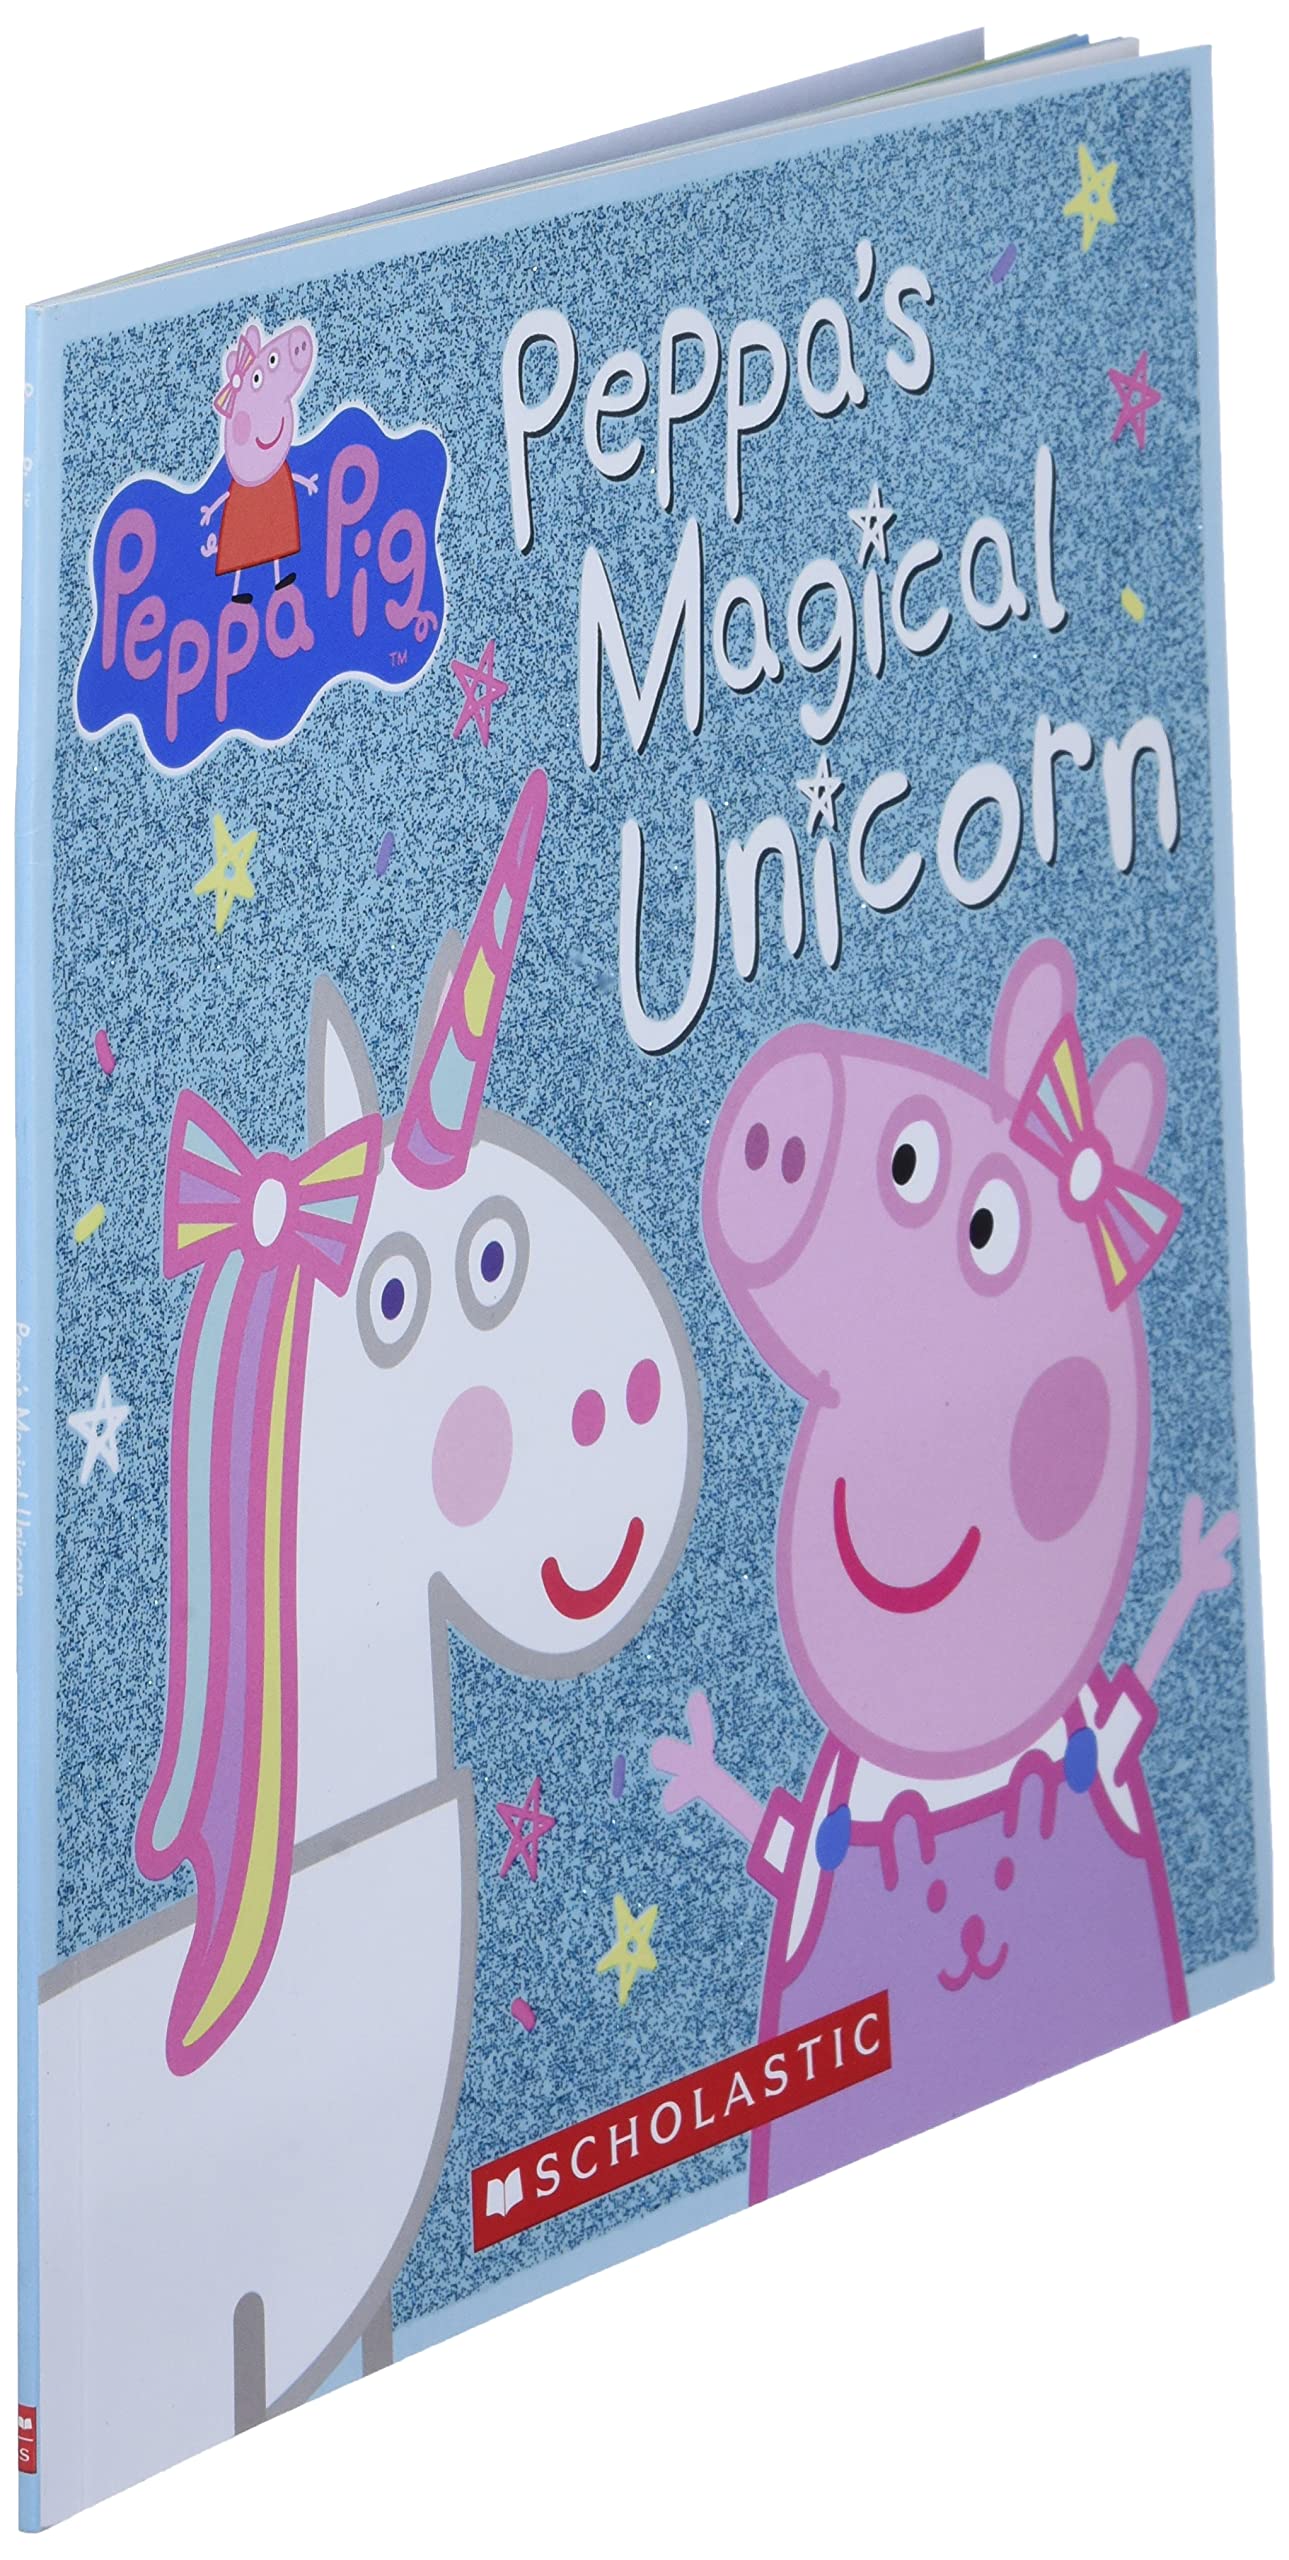 Peppa's Magical Unicorn